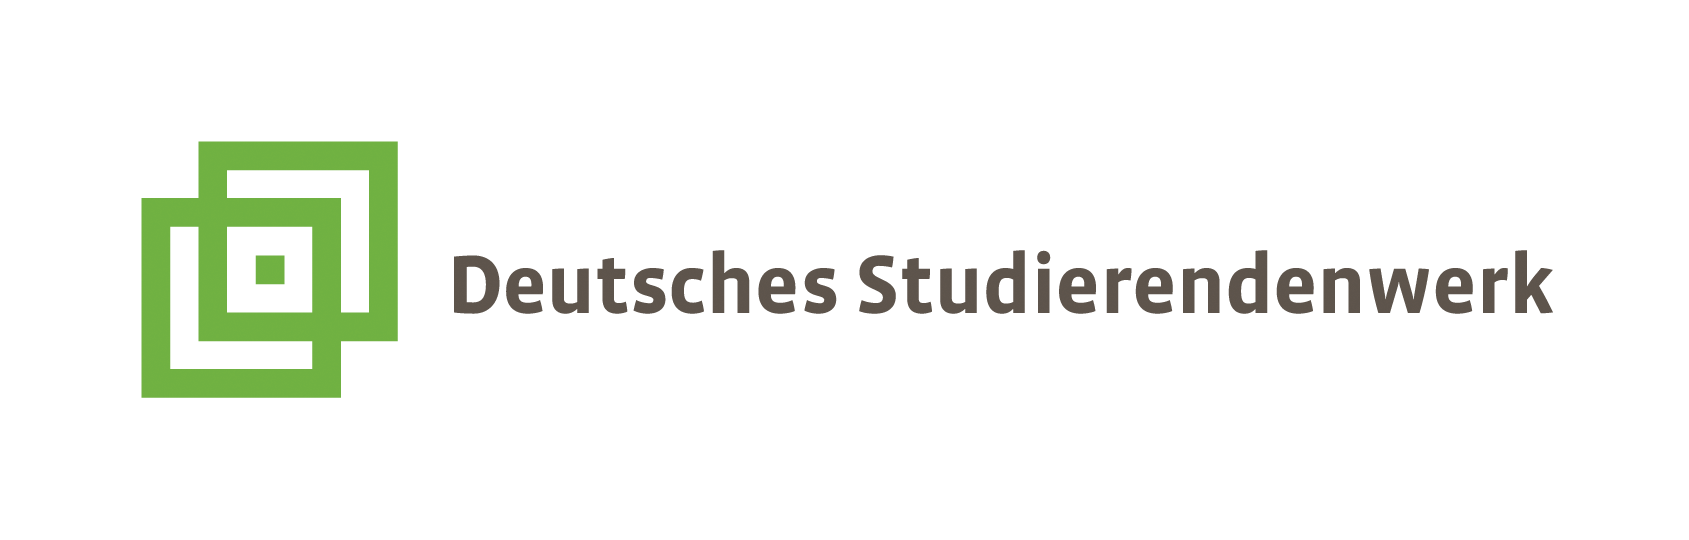 Deutsches Studierendenwerk